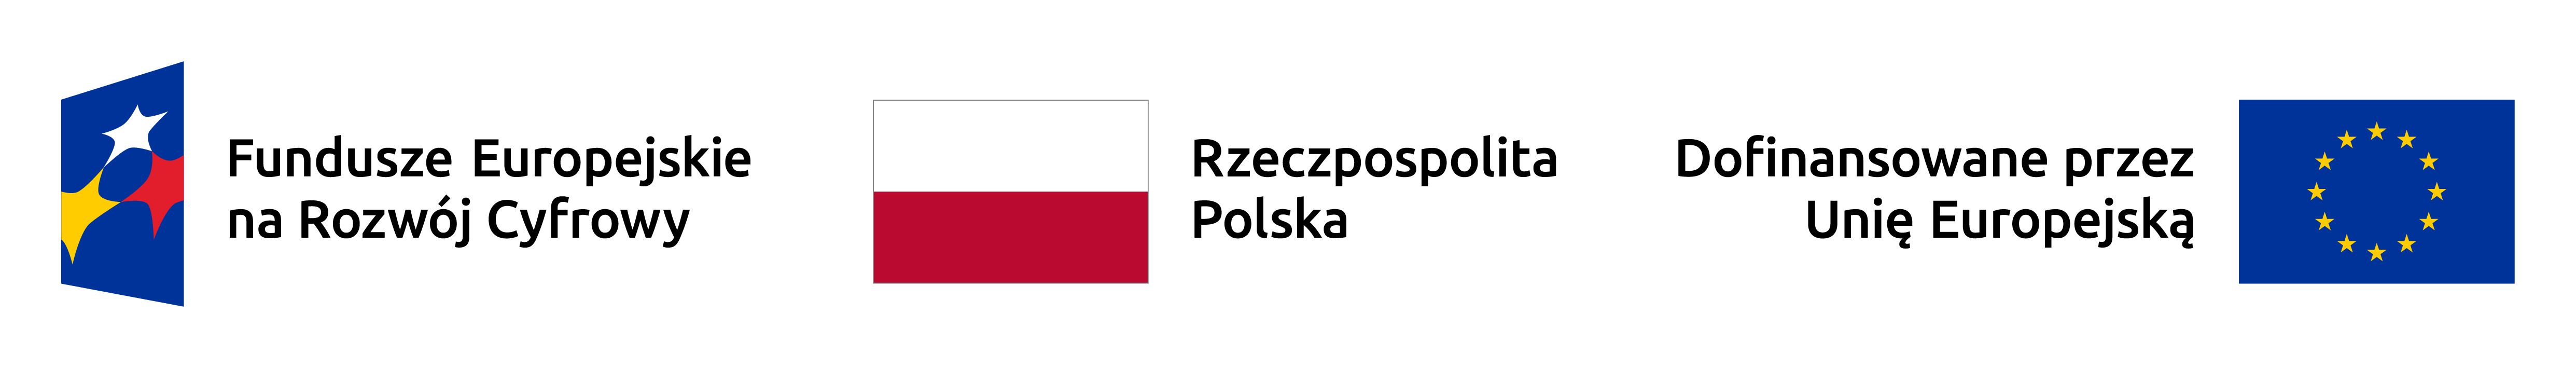 Trzy flagi: Lewa z symbolem Funduszy Europejskich, środkowa z flagą Polski, prawa z napisem "Dofinansowane przez Unię Europejską" i gwiazdami UE.